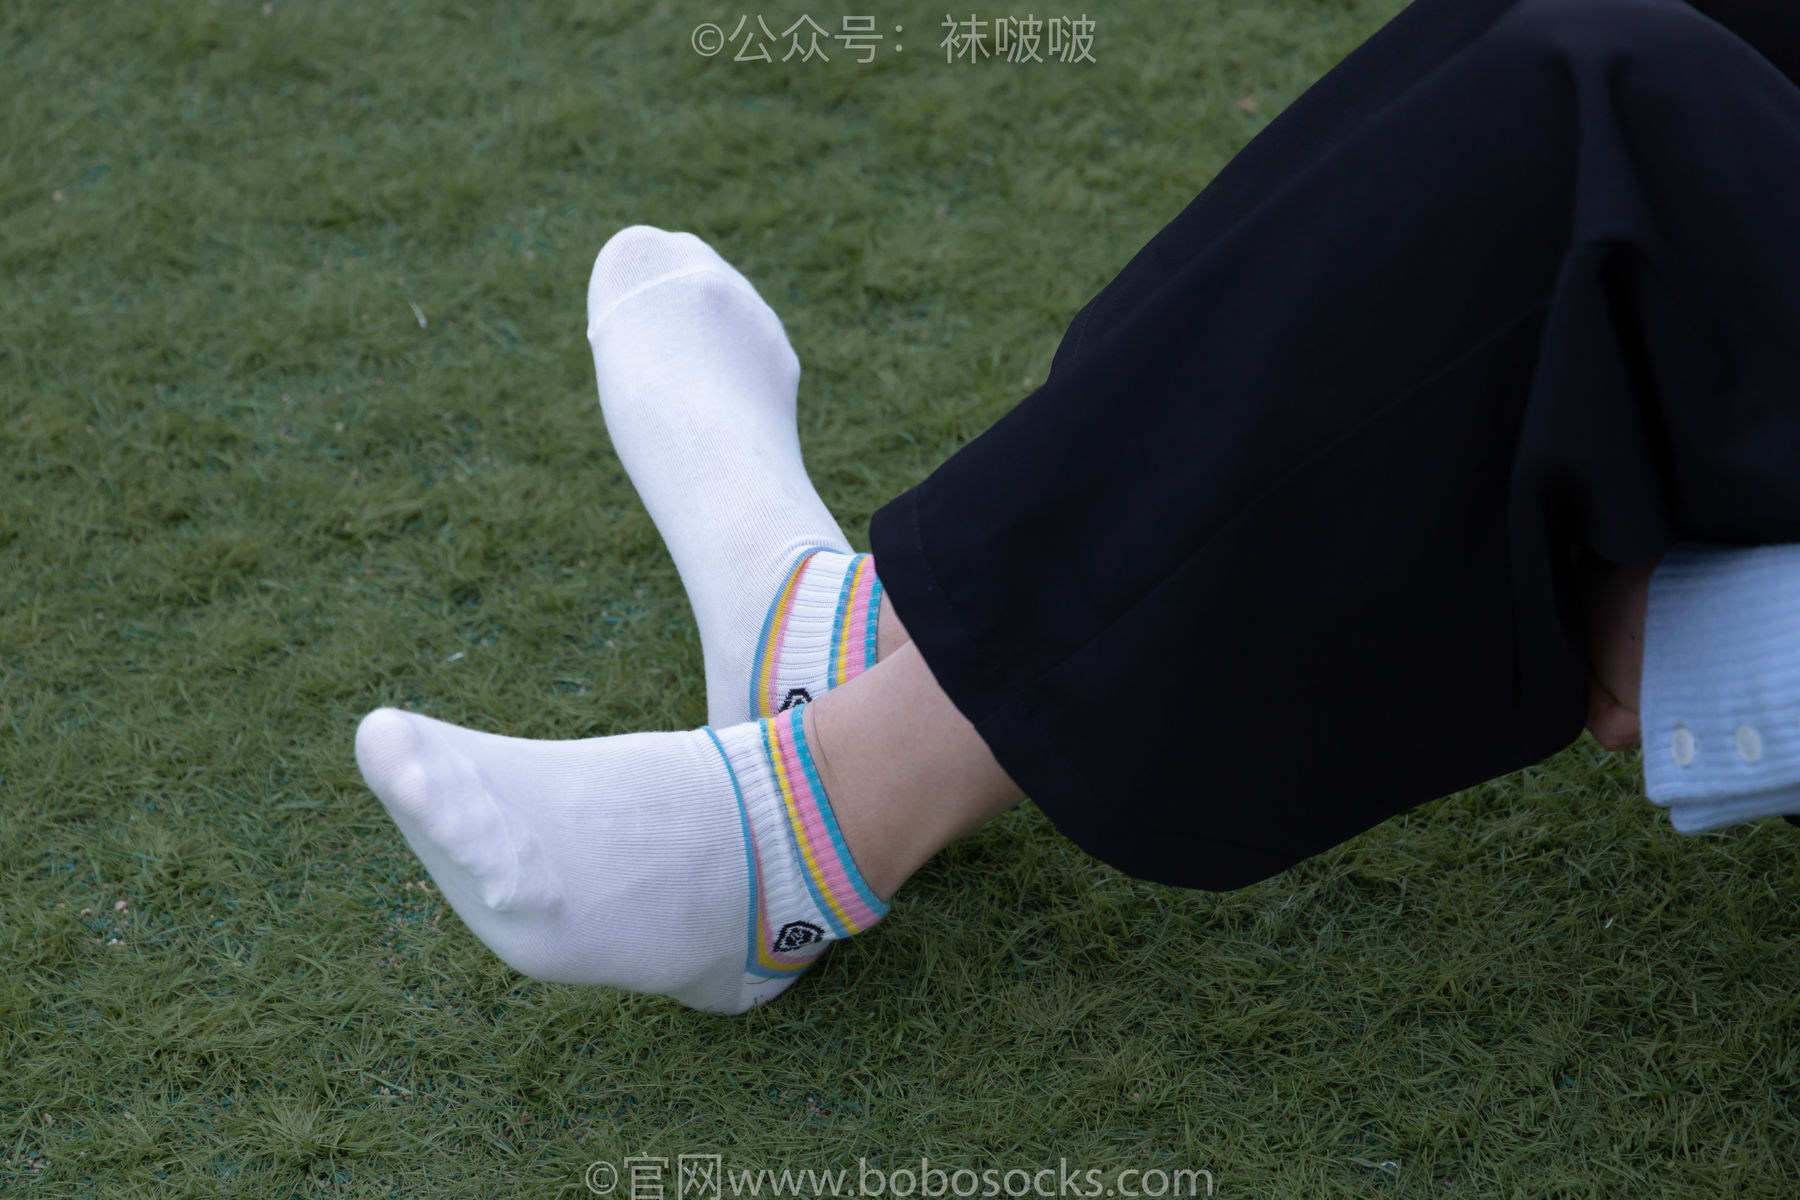 BoBoSocks袜啵啵 No.021 泡芙-板鞋、白棉袜、裸足/(131P)